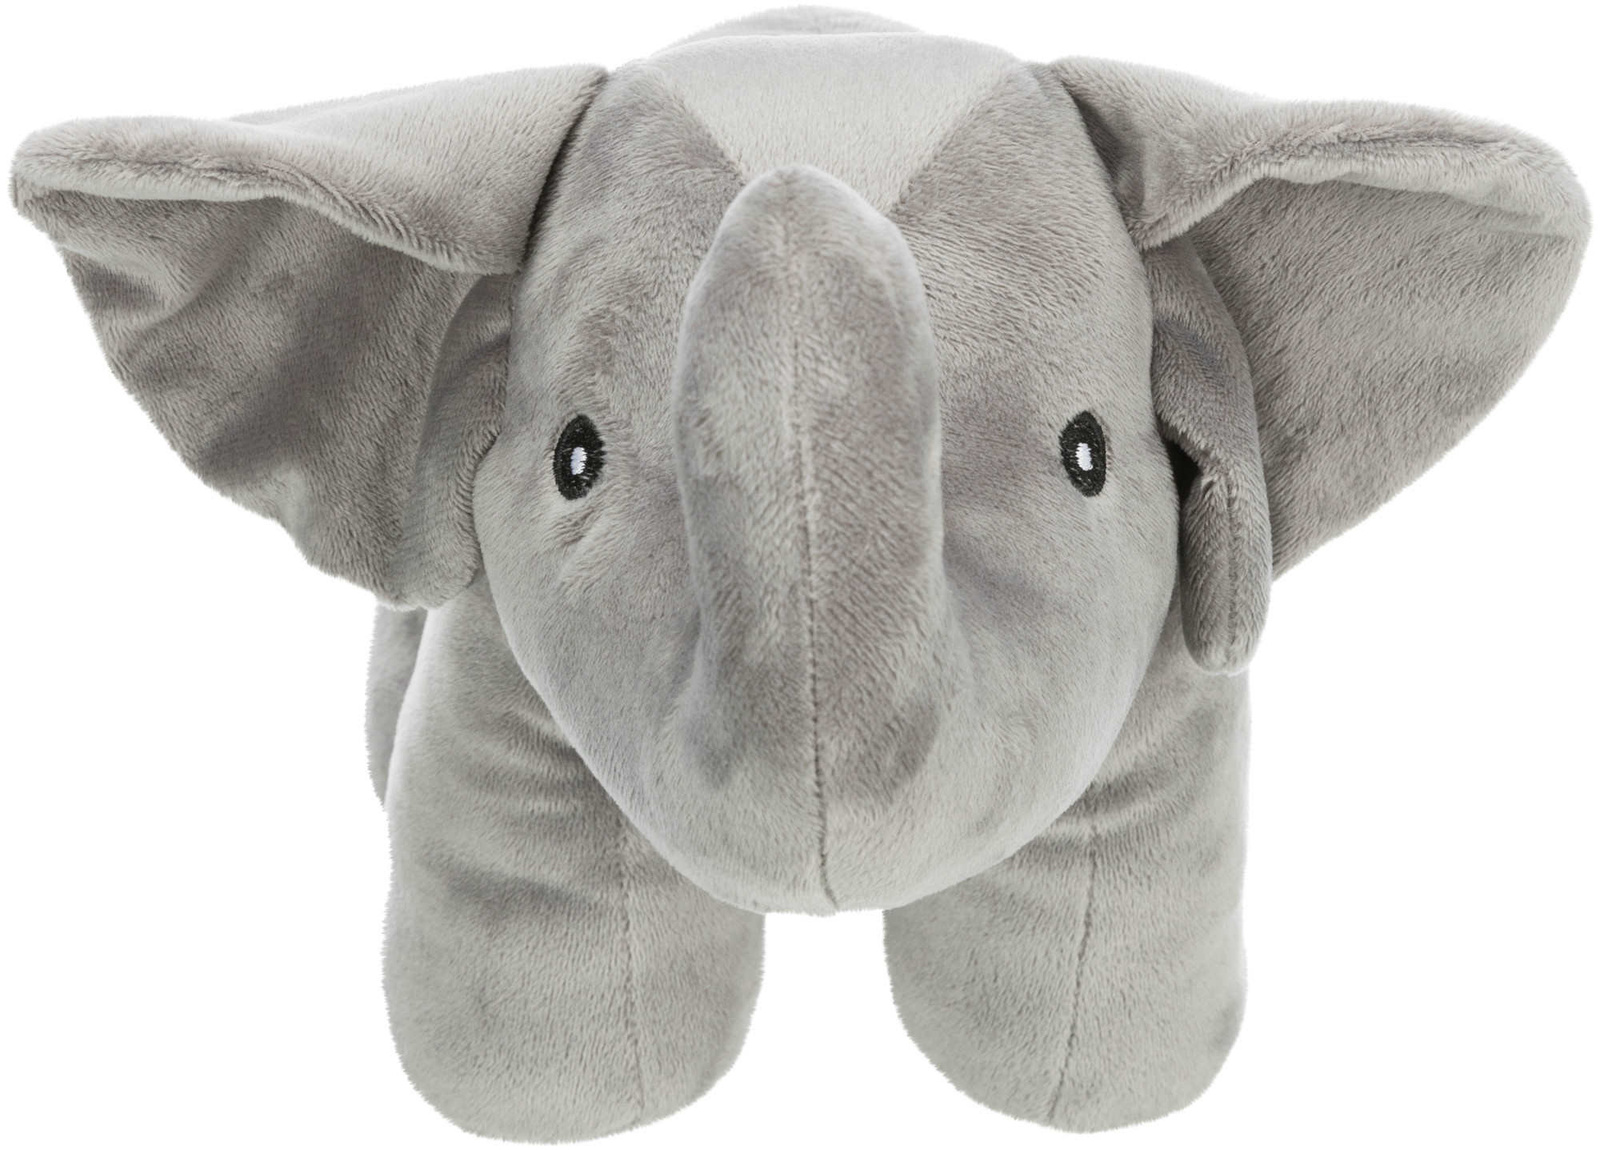 Trixie Trixie игрушка Слон, плюш (36 см) слон плюш 36 см trixie игрушка для собак 35926